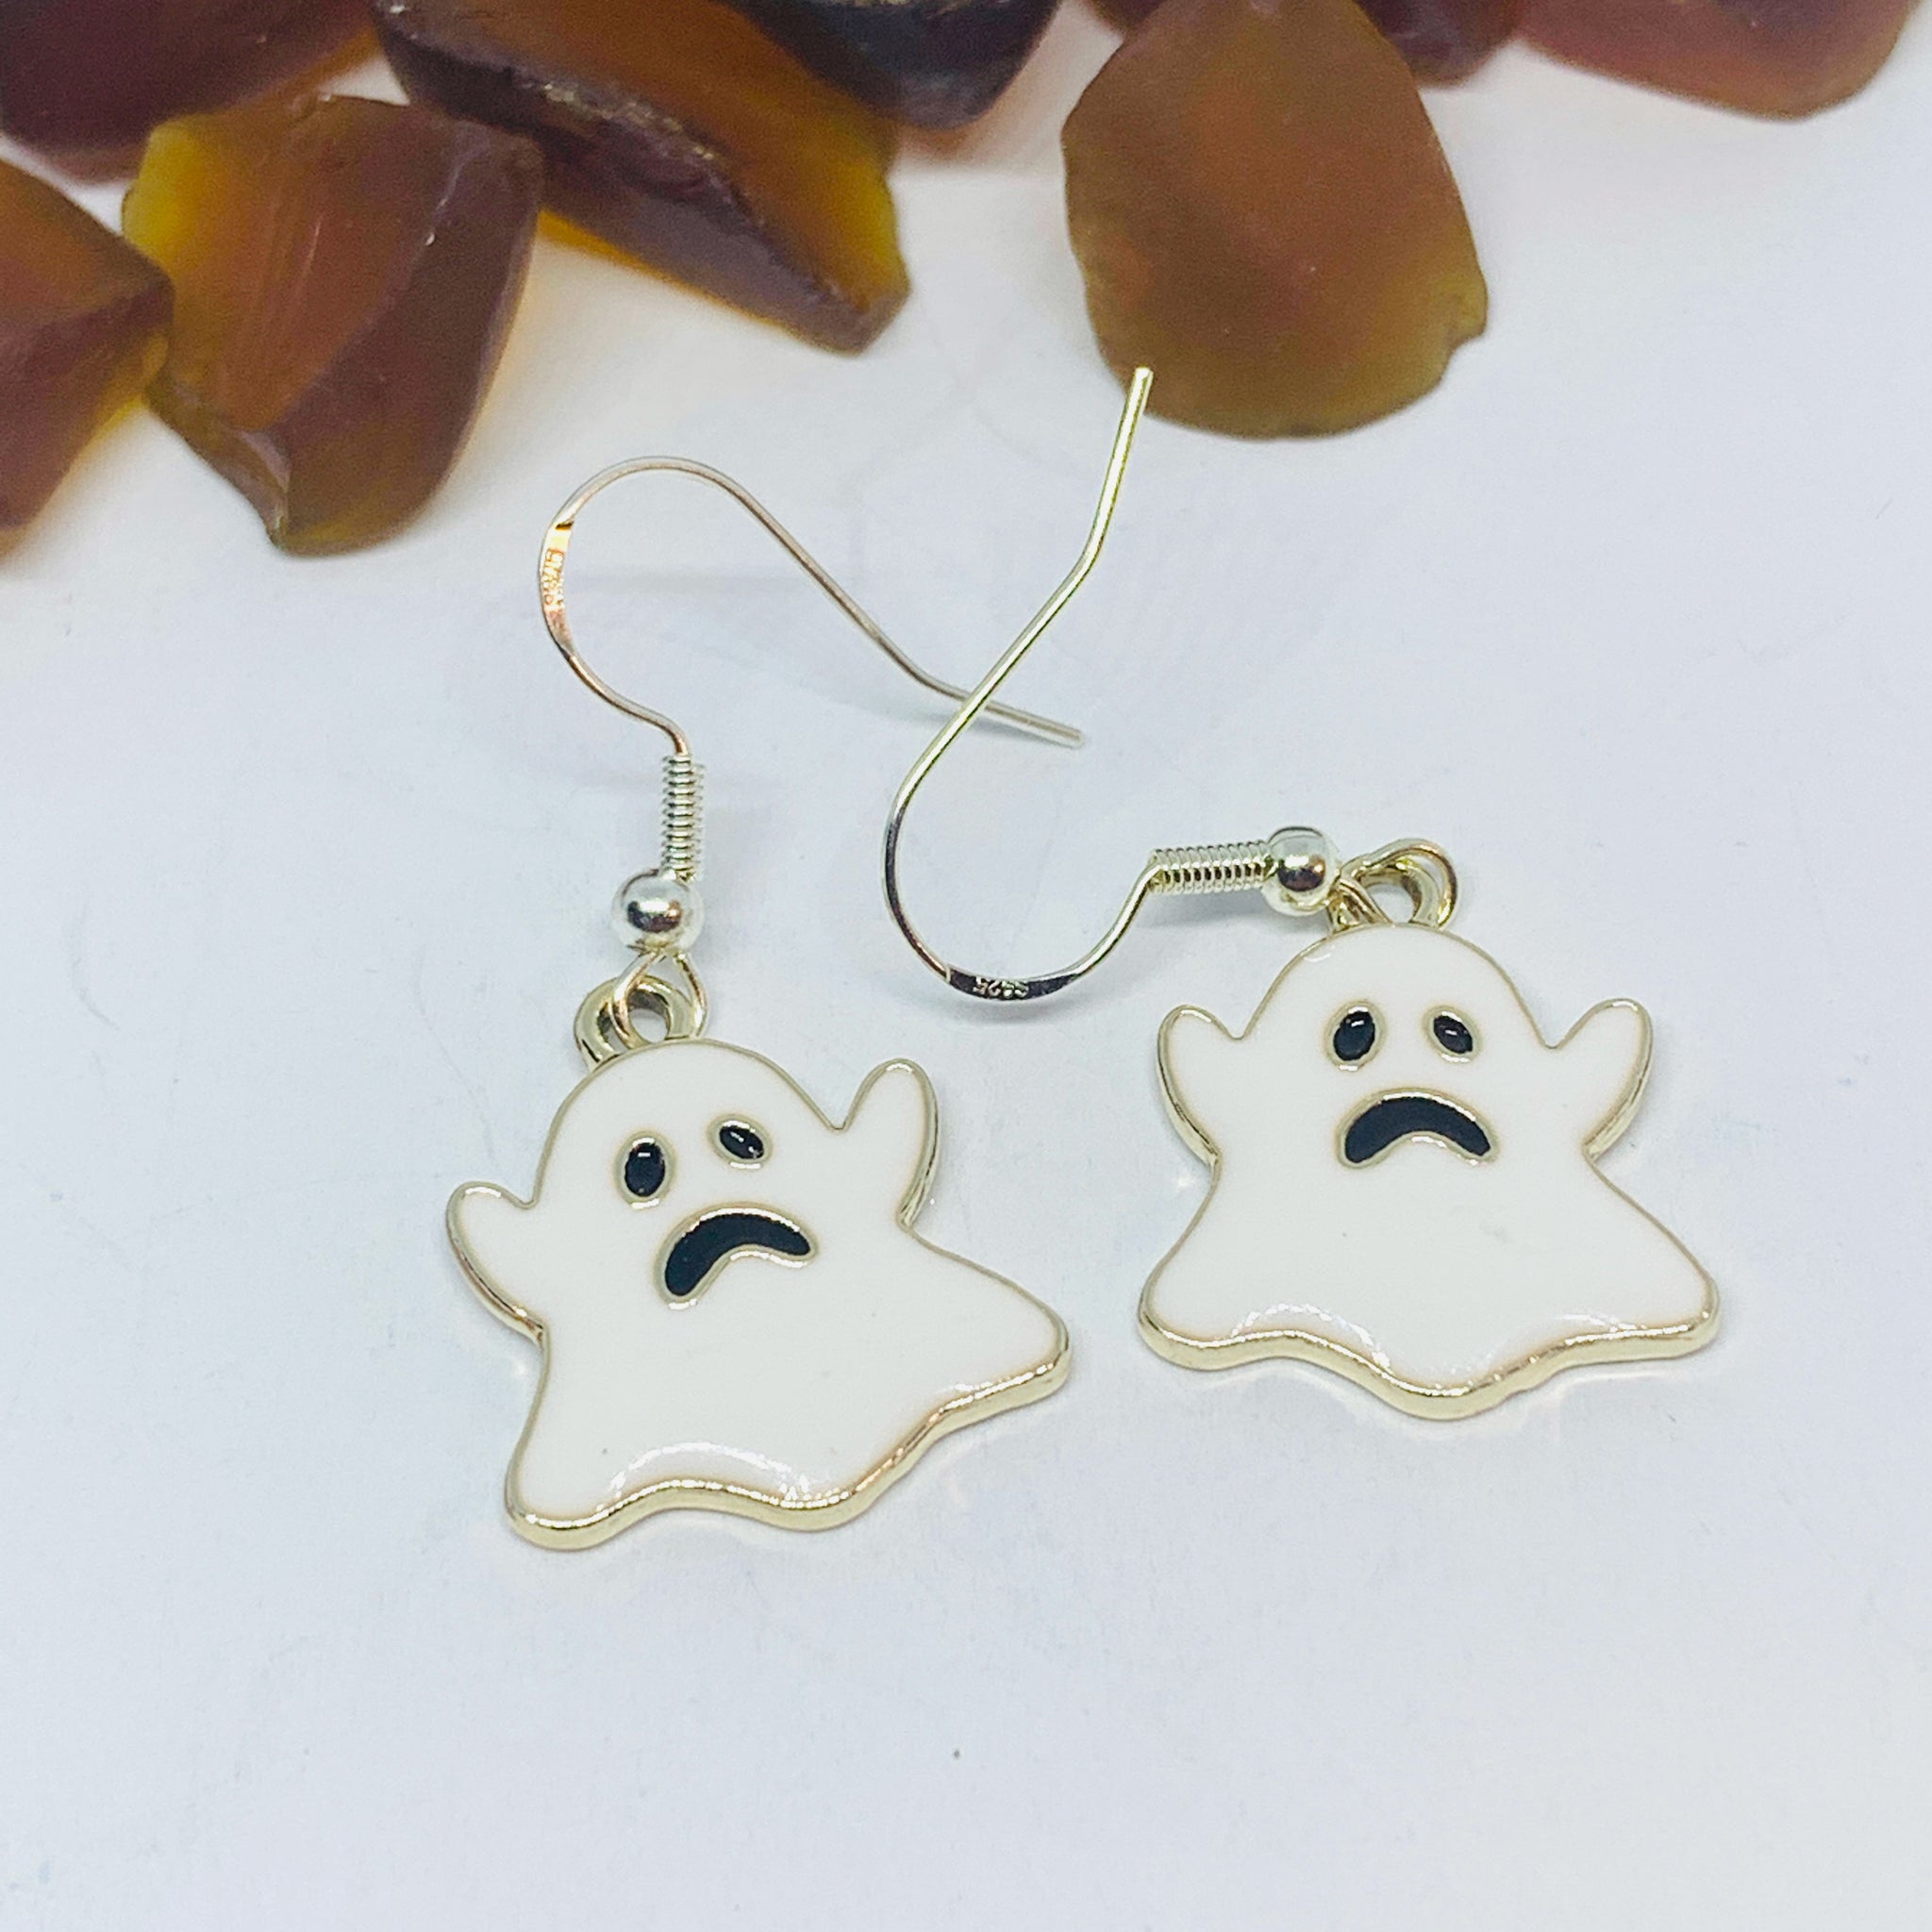 White Ghost Enamel Earrings with Silver Wires and Backs | Spirit Earrings | Fall Jewelry | Ghost Earrings | Halloween Earrings